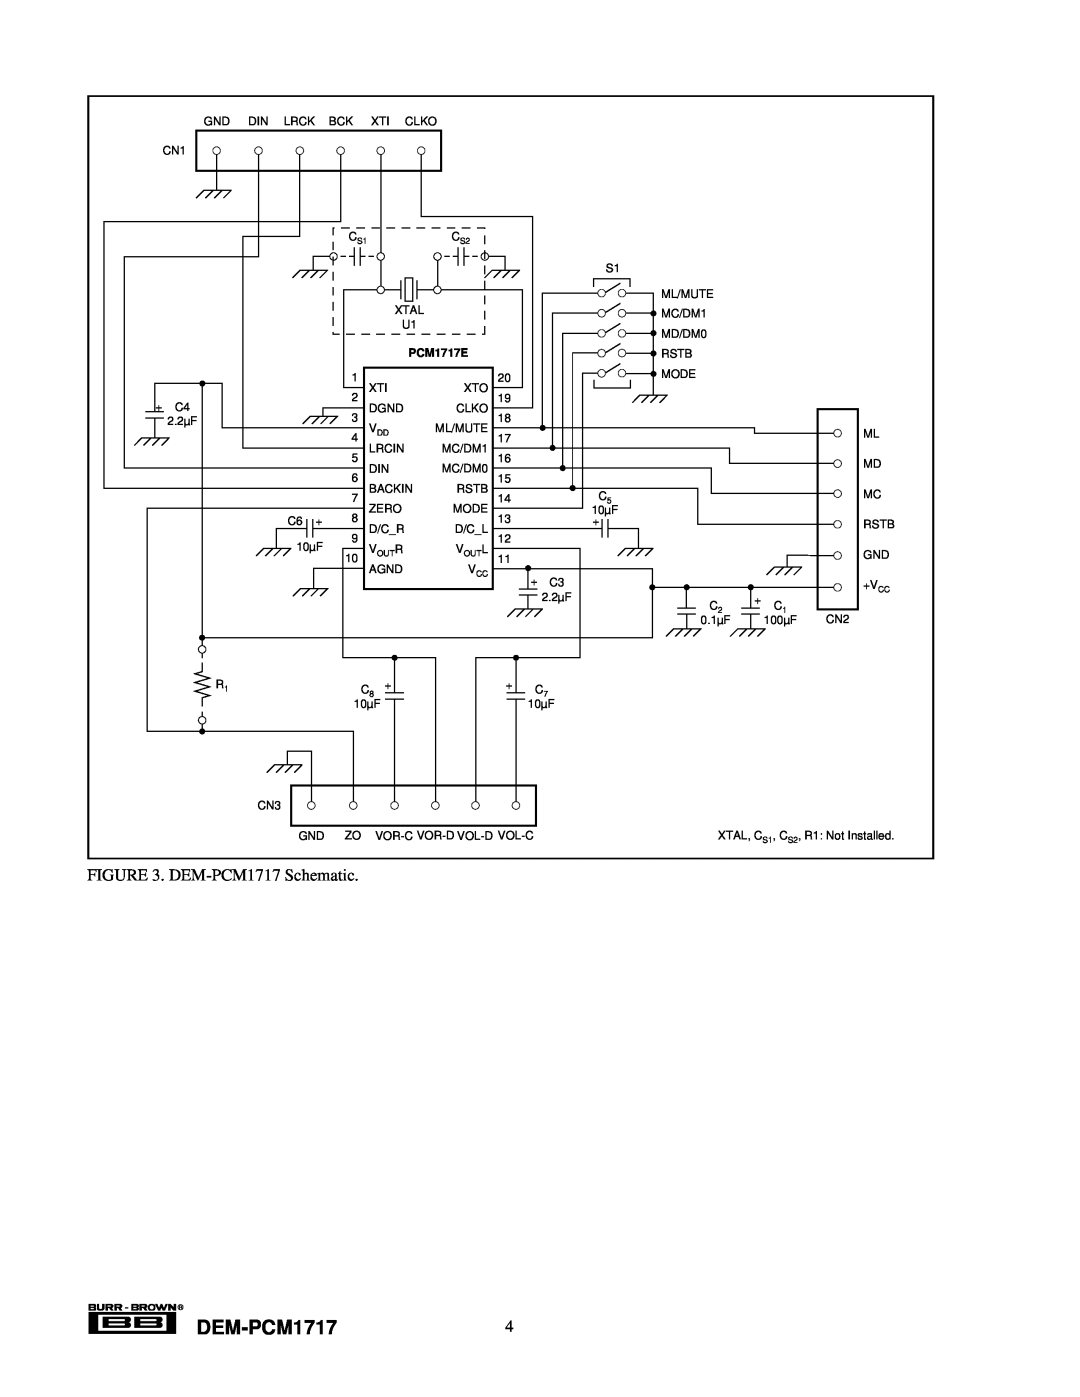 Texas Instruments manual DEM-PCM17174, DEM-PCM1717Schematic, PCM1717E 